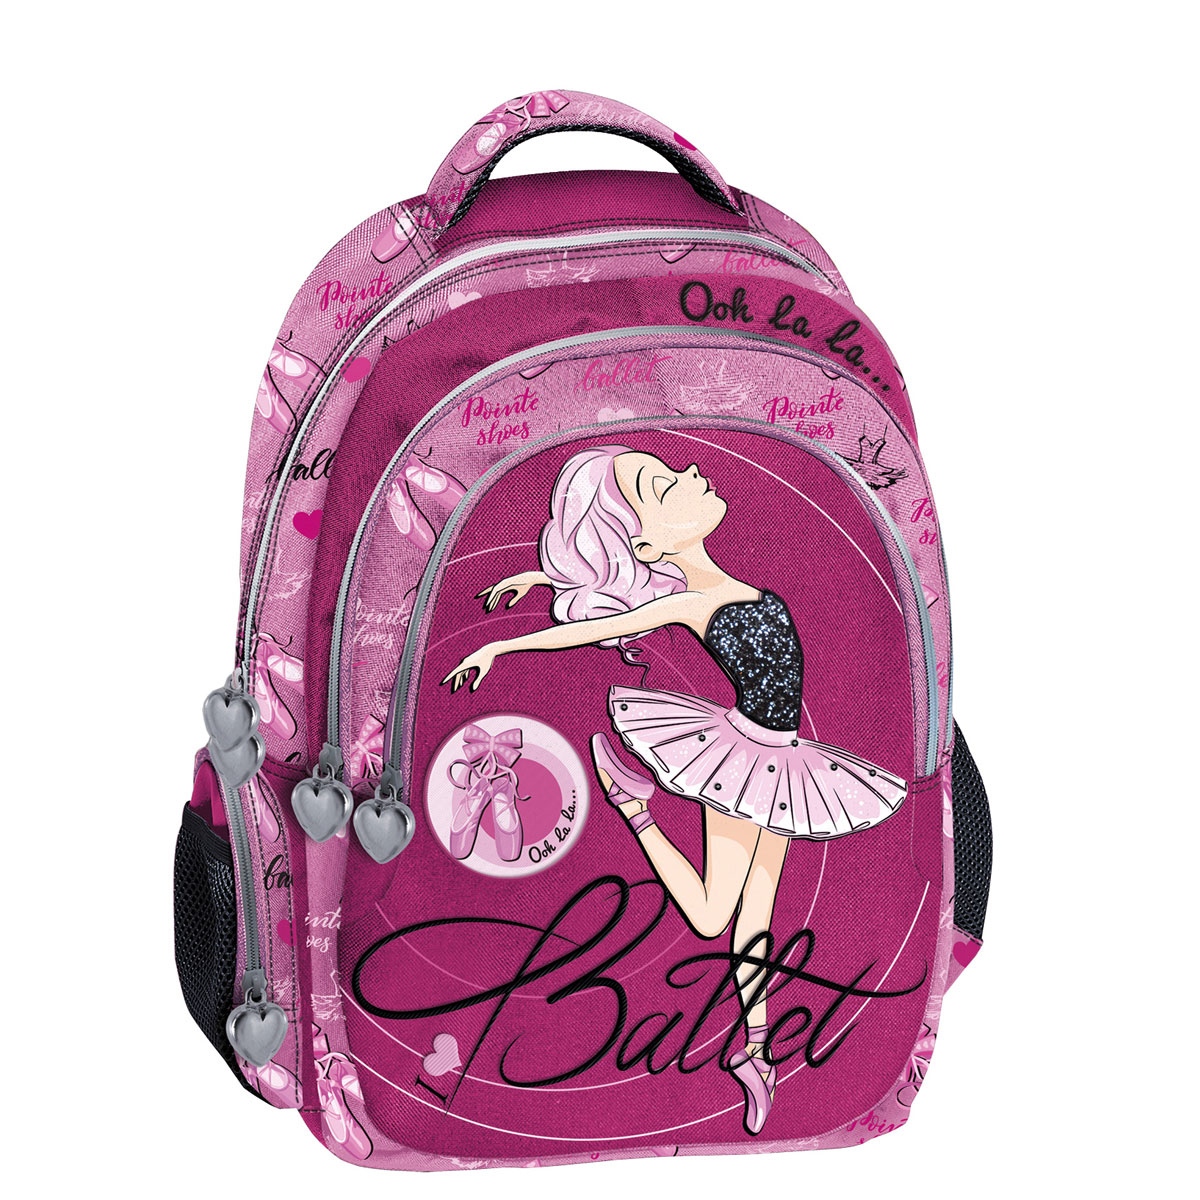 Σχολική Τσάντα Δημοτικού (30x14x44) Graffiti Ballerina 256945